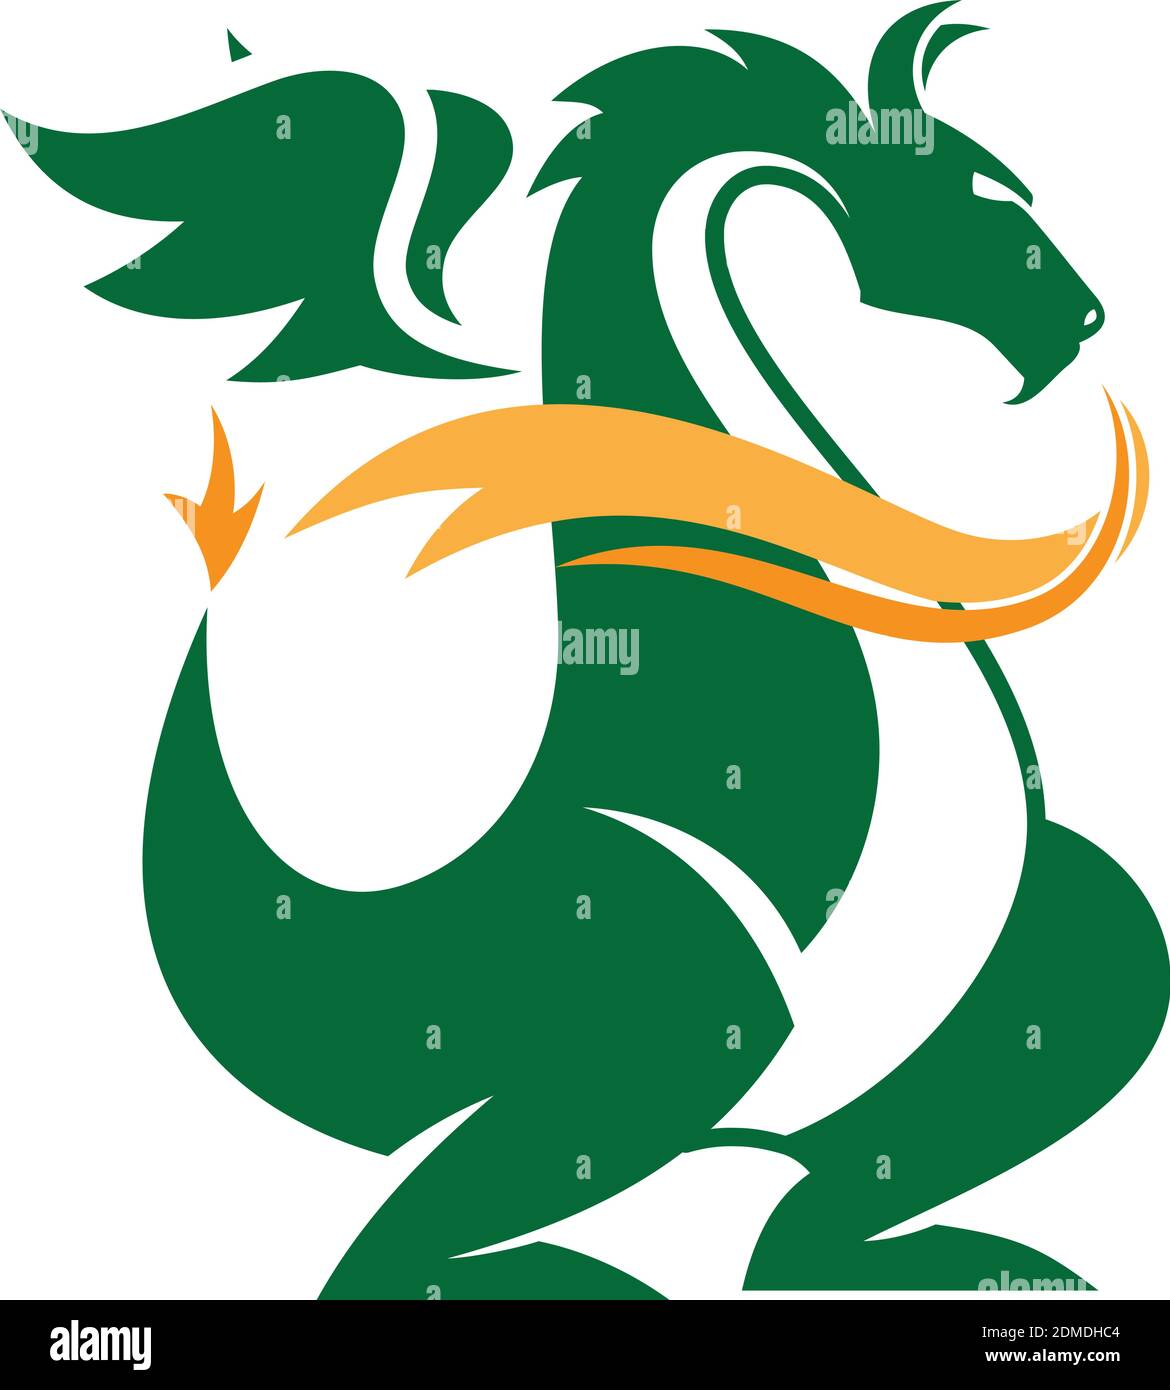 Illustrazioni vettoriali stilizzate in verde di sagome dei draghi logo a forma di drago su sfondo bianco. Illustrazione vettoriale EPS.8 EPS.10 Illustrazione Vettoriale